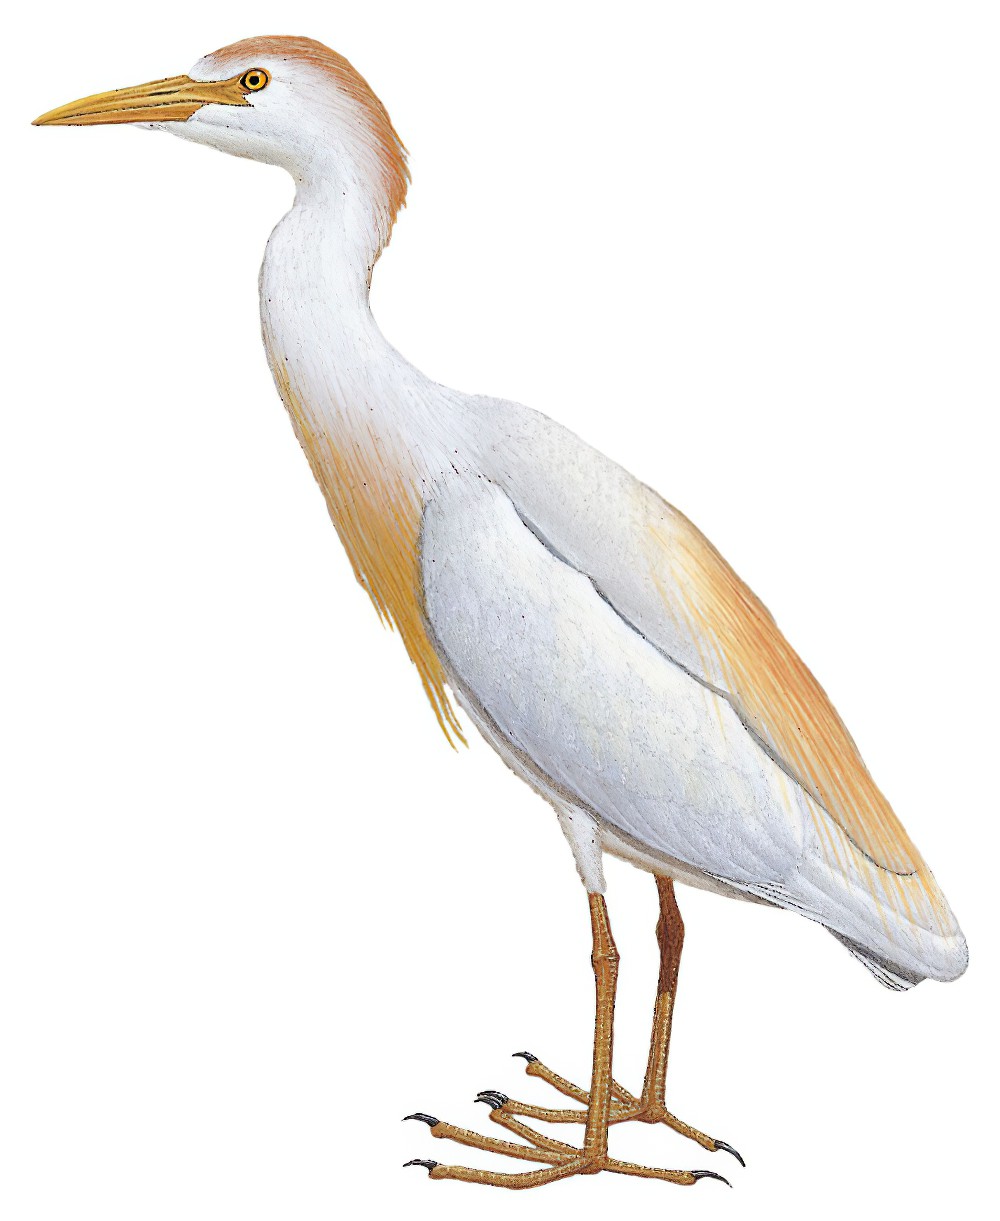 Cattle Egret / Bubulcus ibis